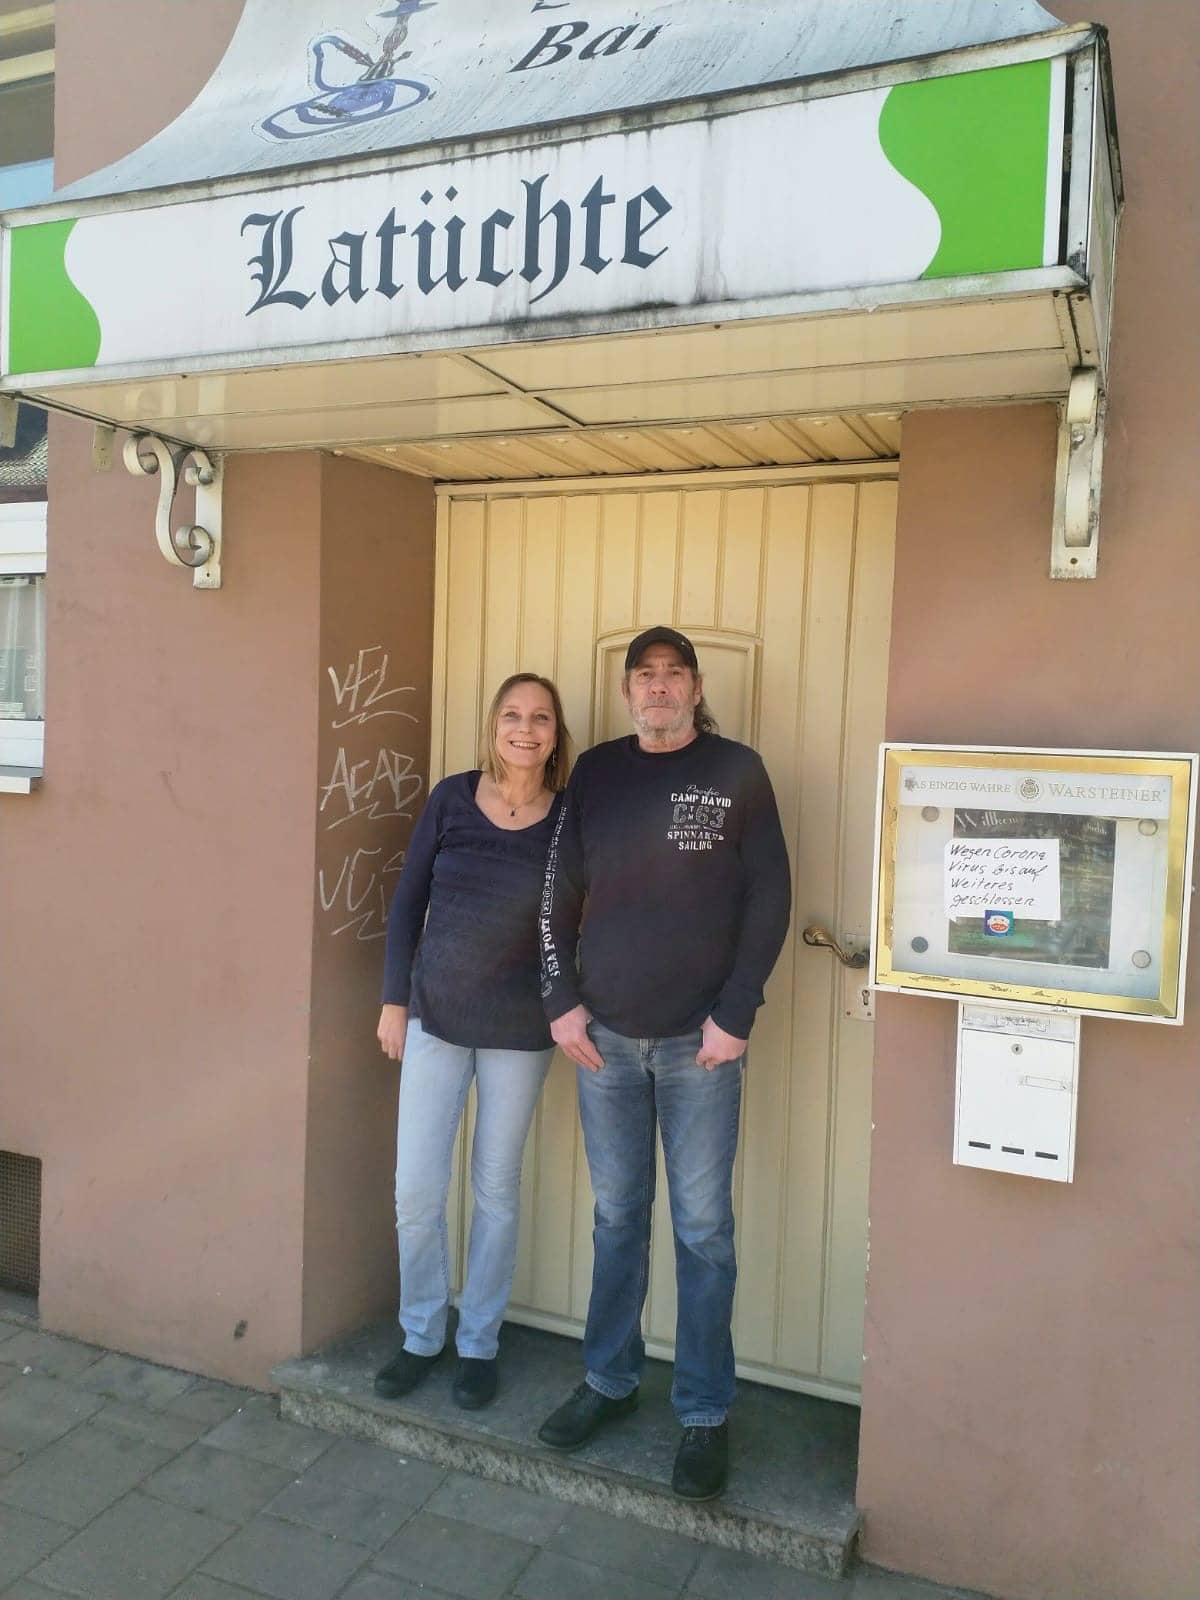 Warten auf bessere Zeiten: Ute Op de Coul und Levent Bilgin vor ihrer geschlossenen Gaststätte